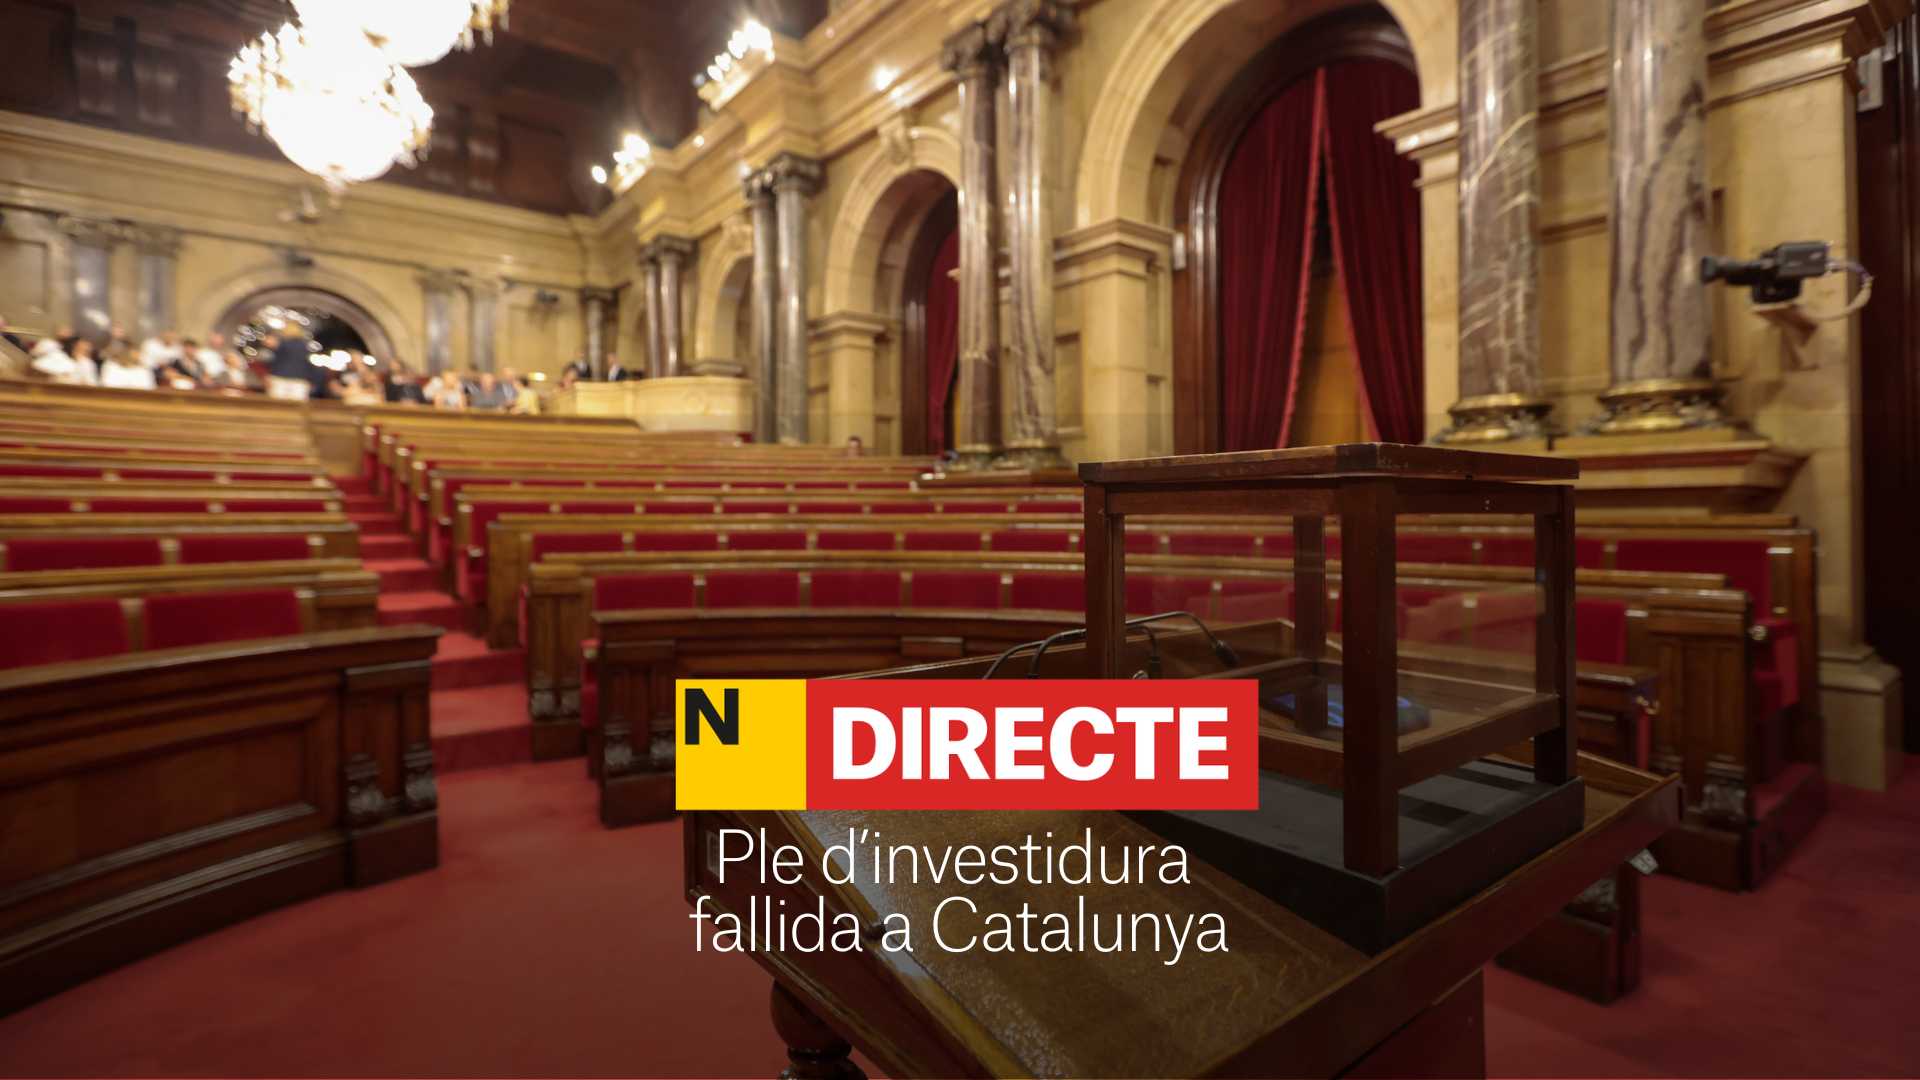 Ple d'investidura fallida, DIRECTE | Compte enrere per a una possible repetició de les eleccions a Catalunya